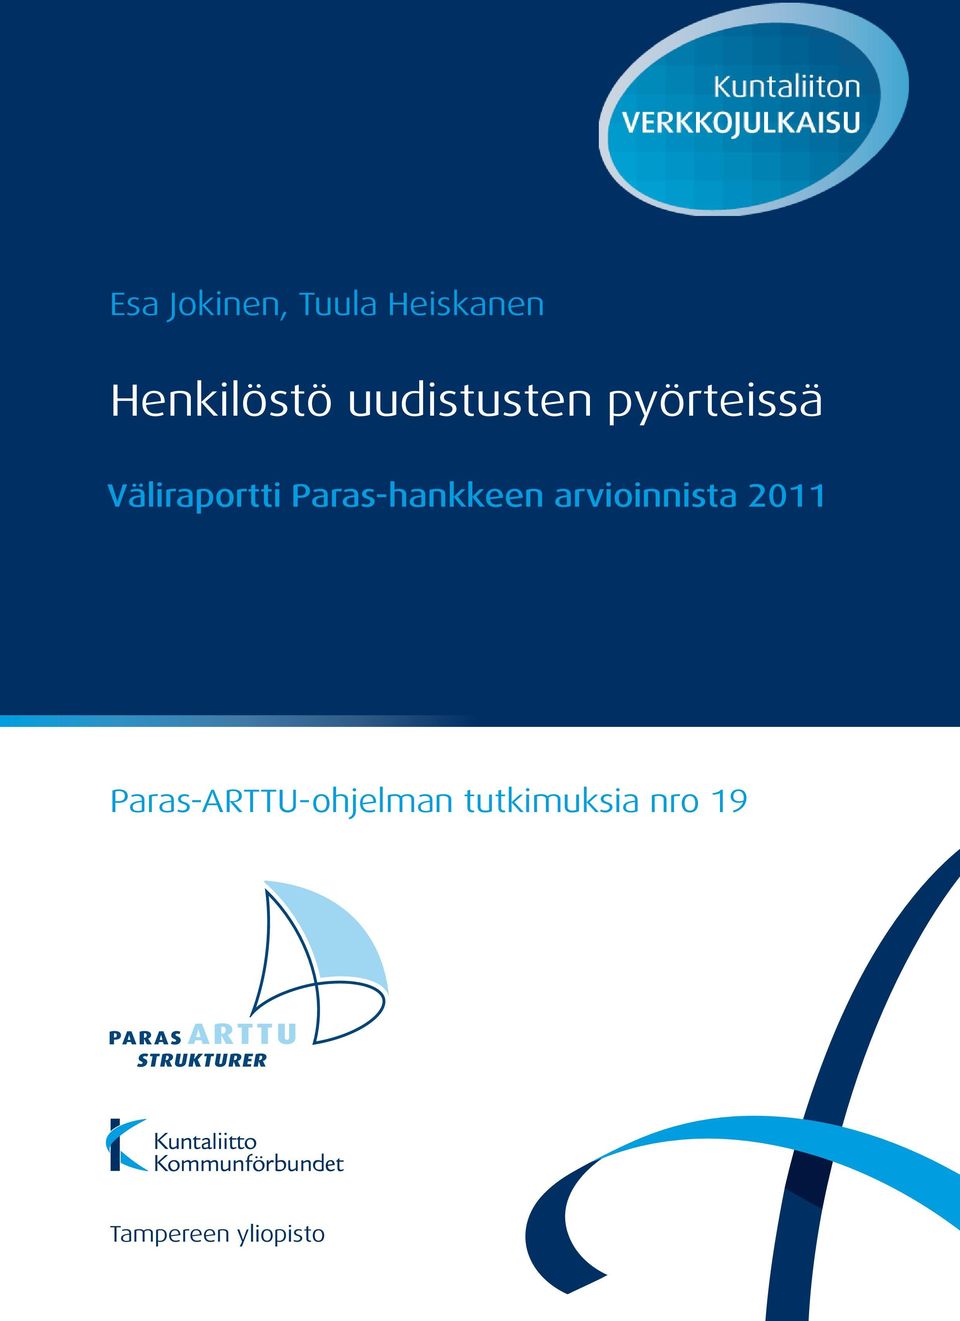 Paras-hankkeen arvioinnista 2011